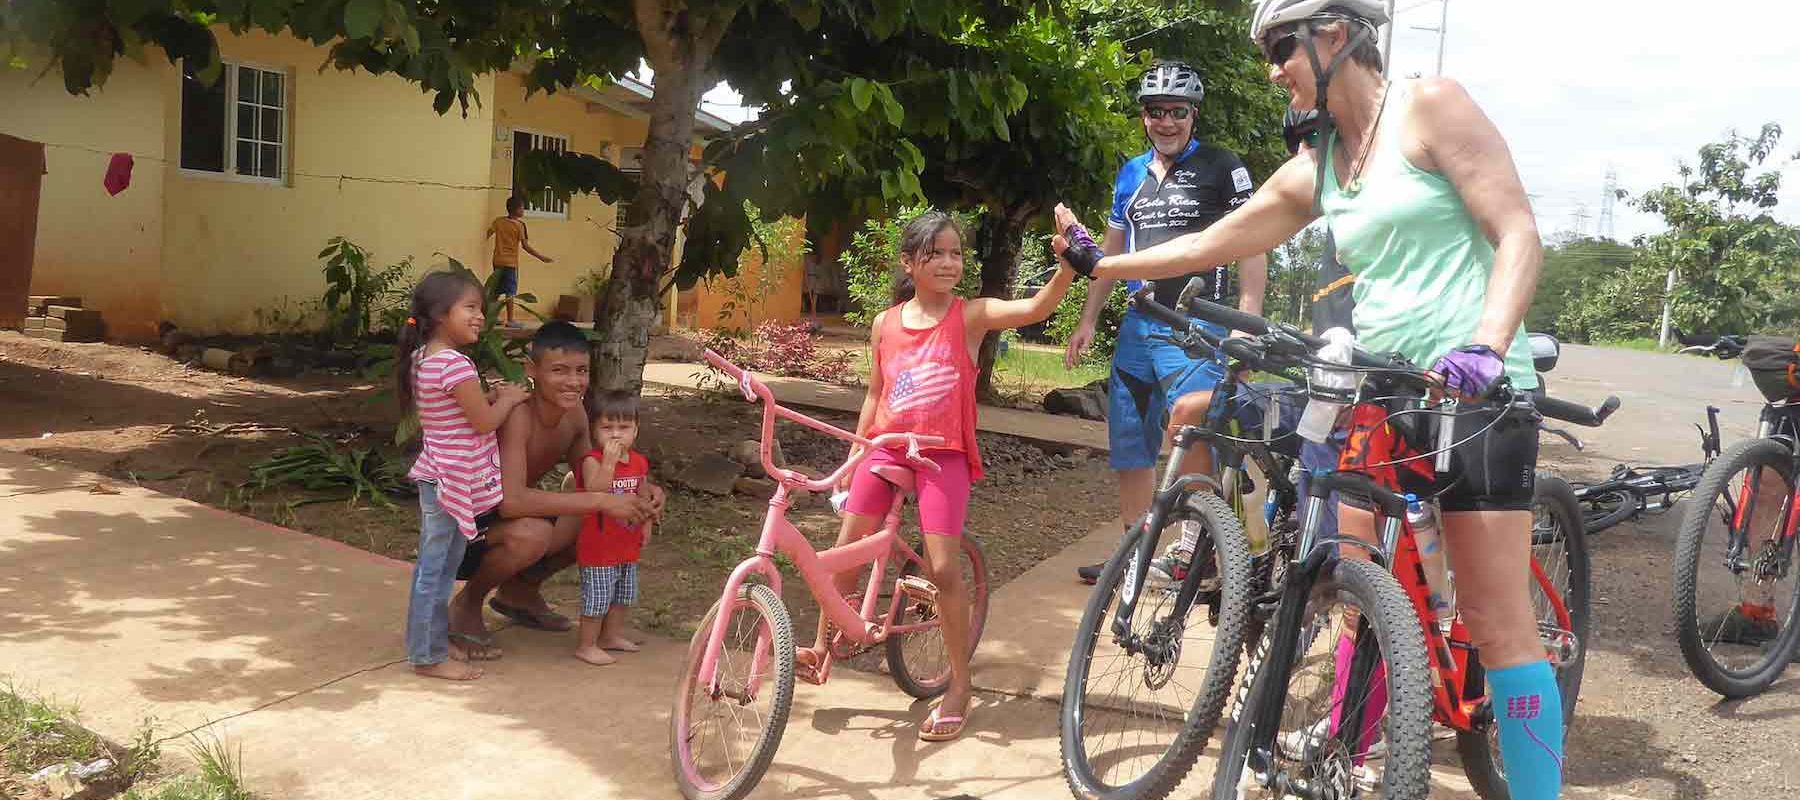 Biking through rural villages in Costa Rica